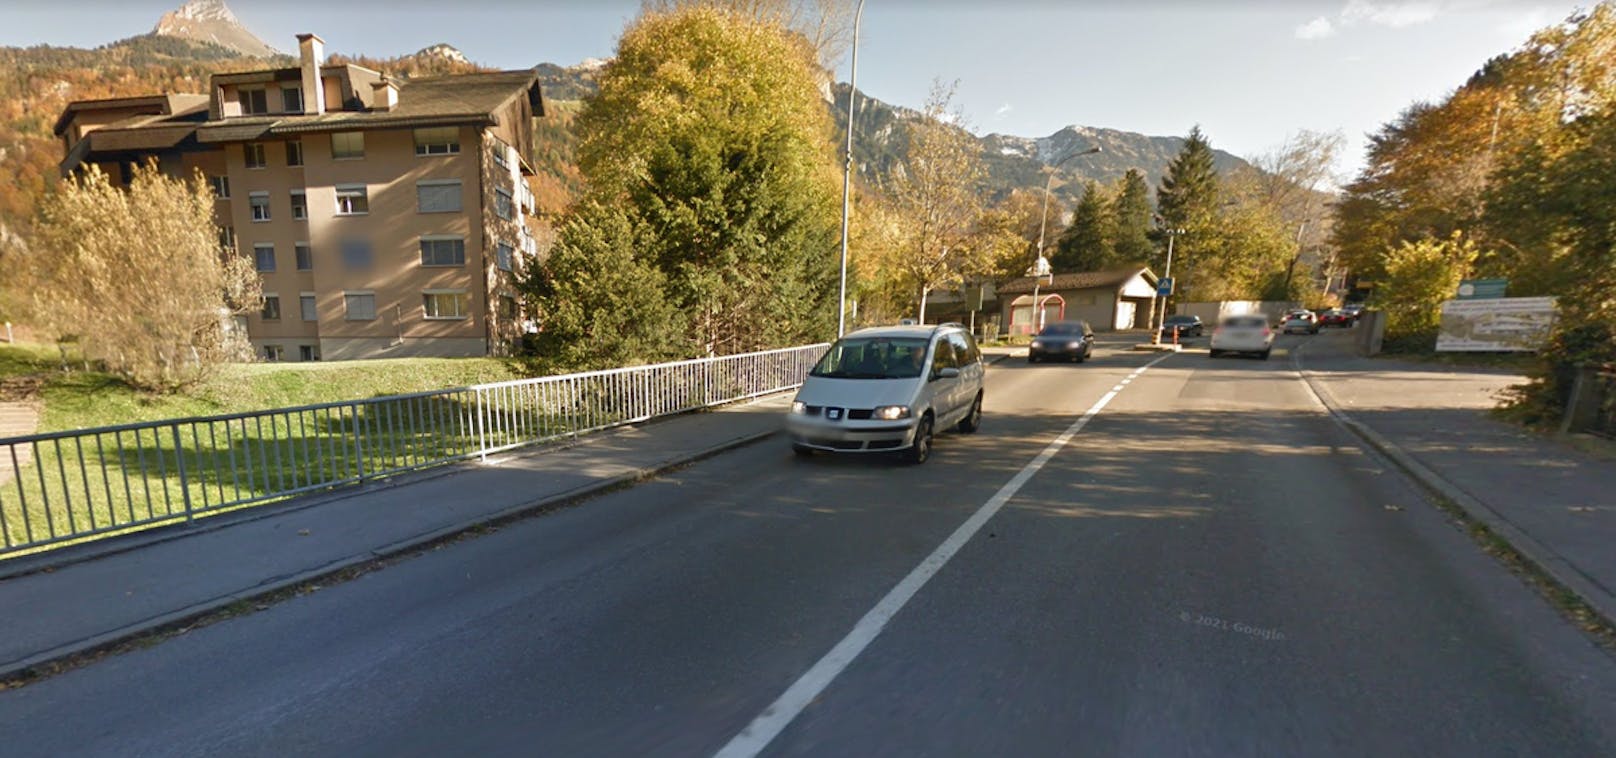 In der Nacht auf Samstag wurde im Schweizer Kanton Glarus eine 30-jährige Frau tot in einem Auto aufgefunden